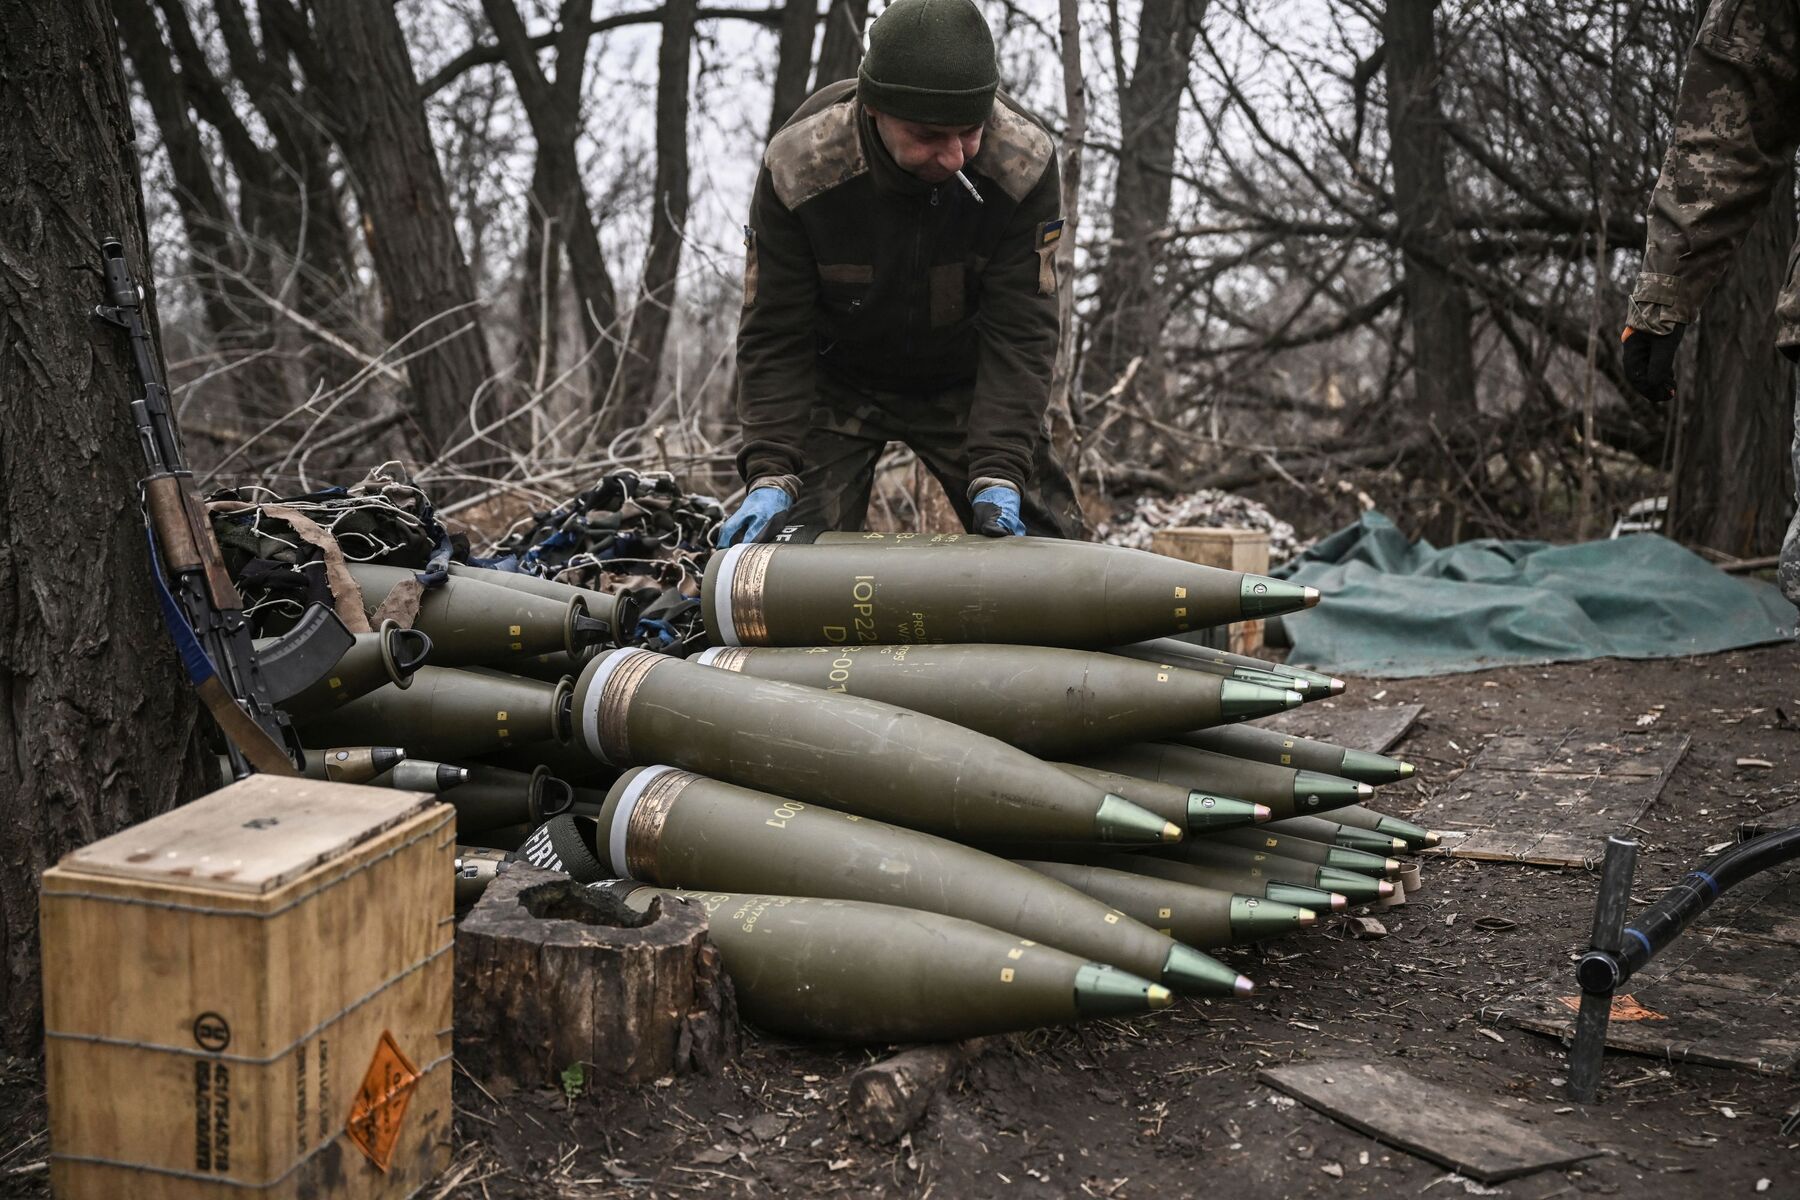 Ukraine soldier sorting artillery rounds 155mm